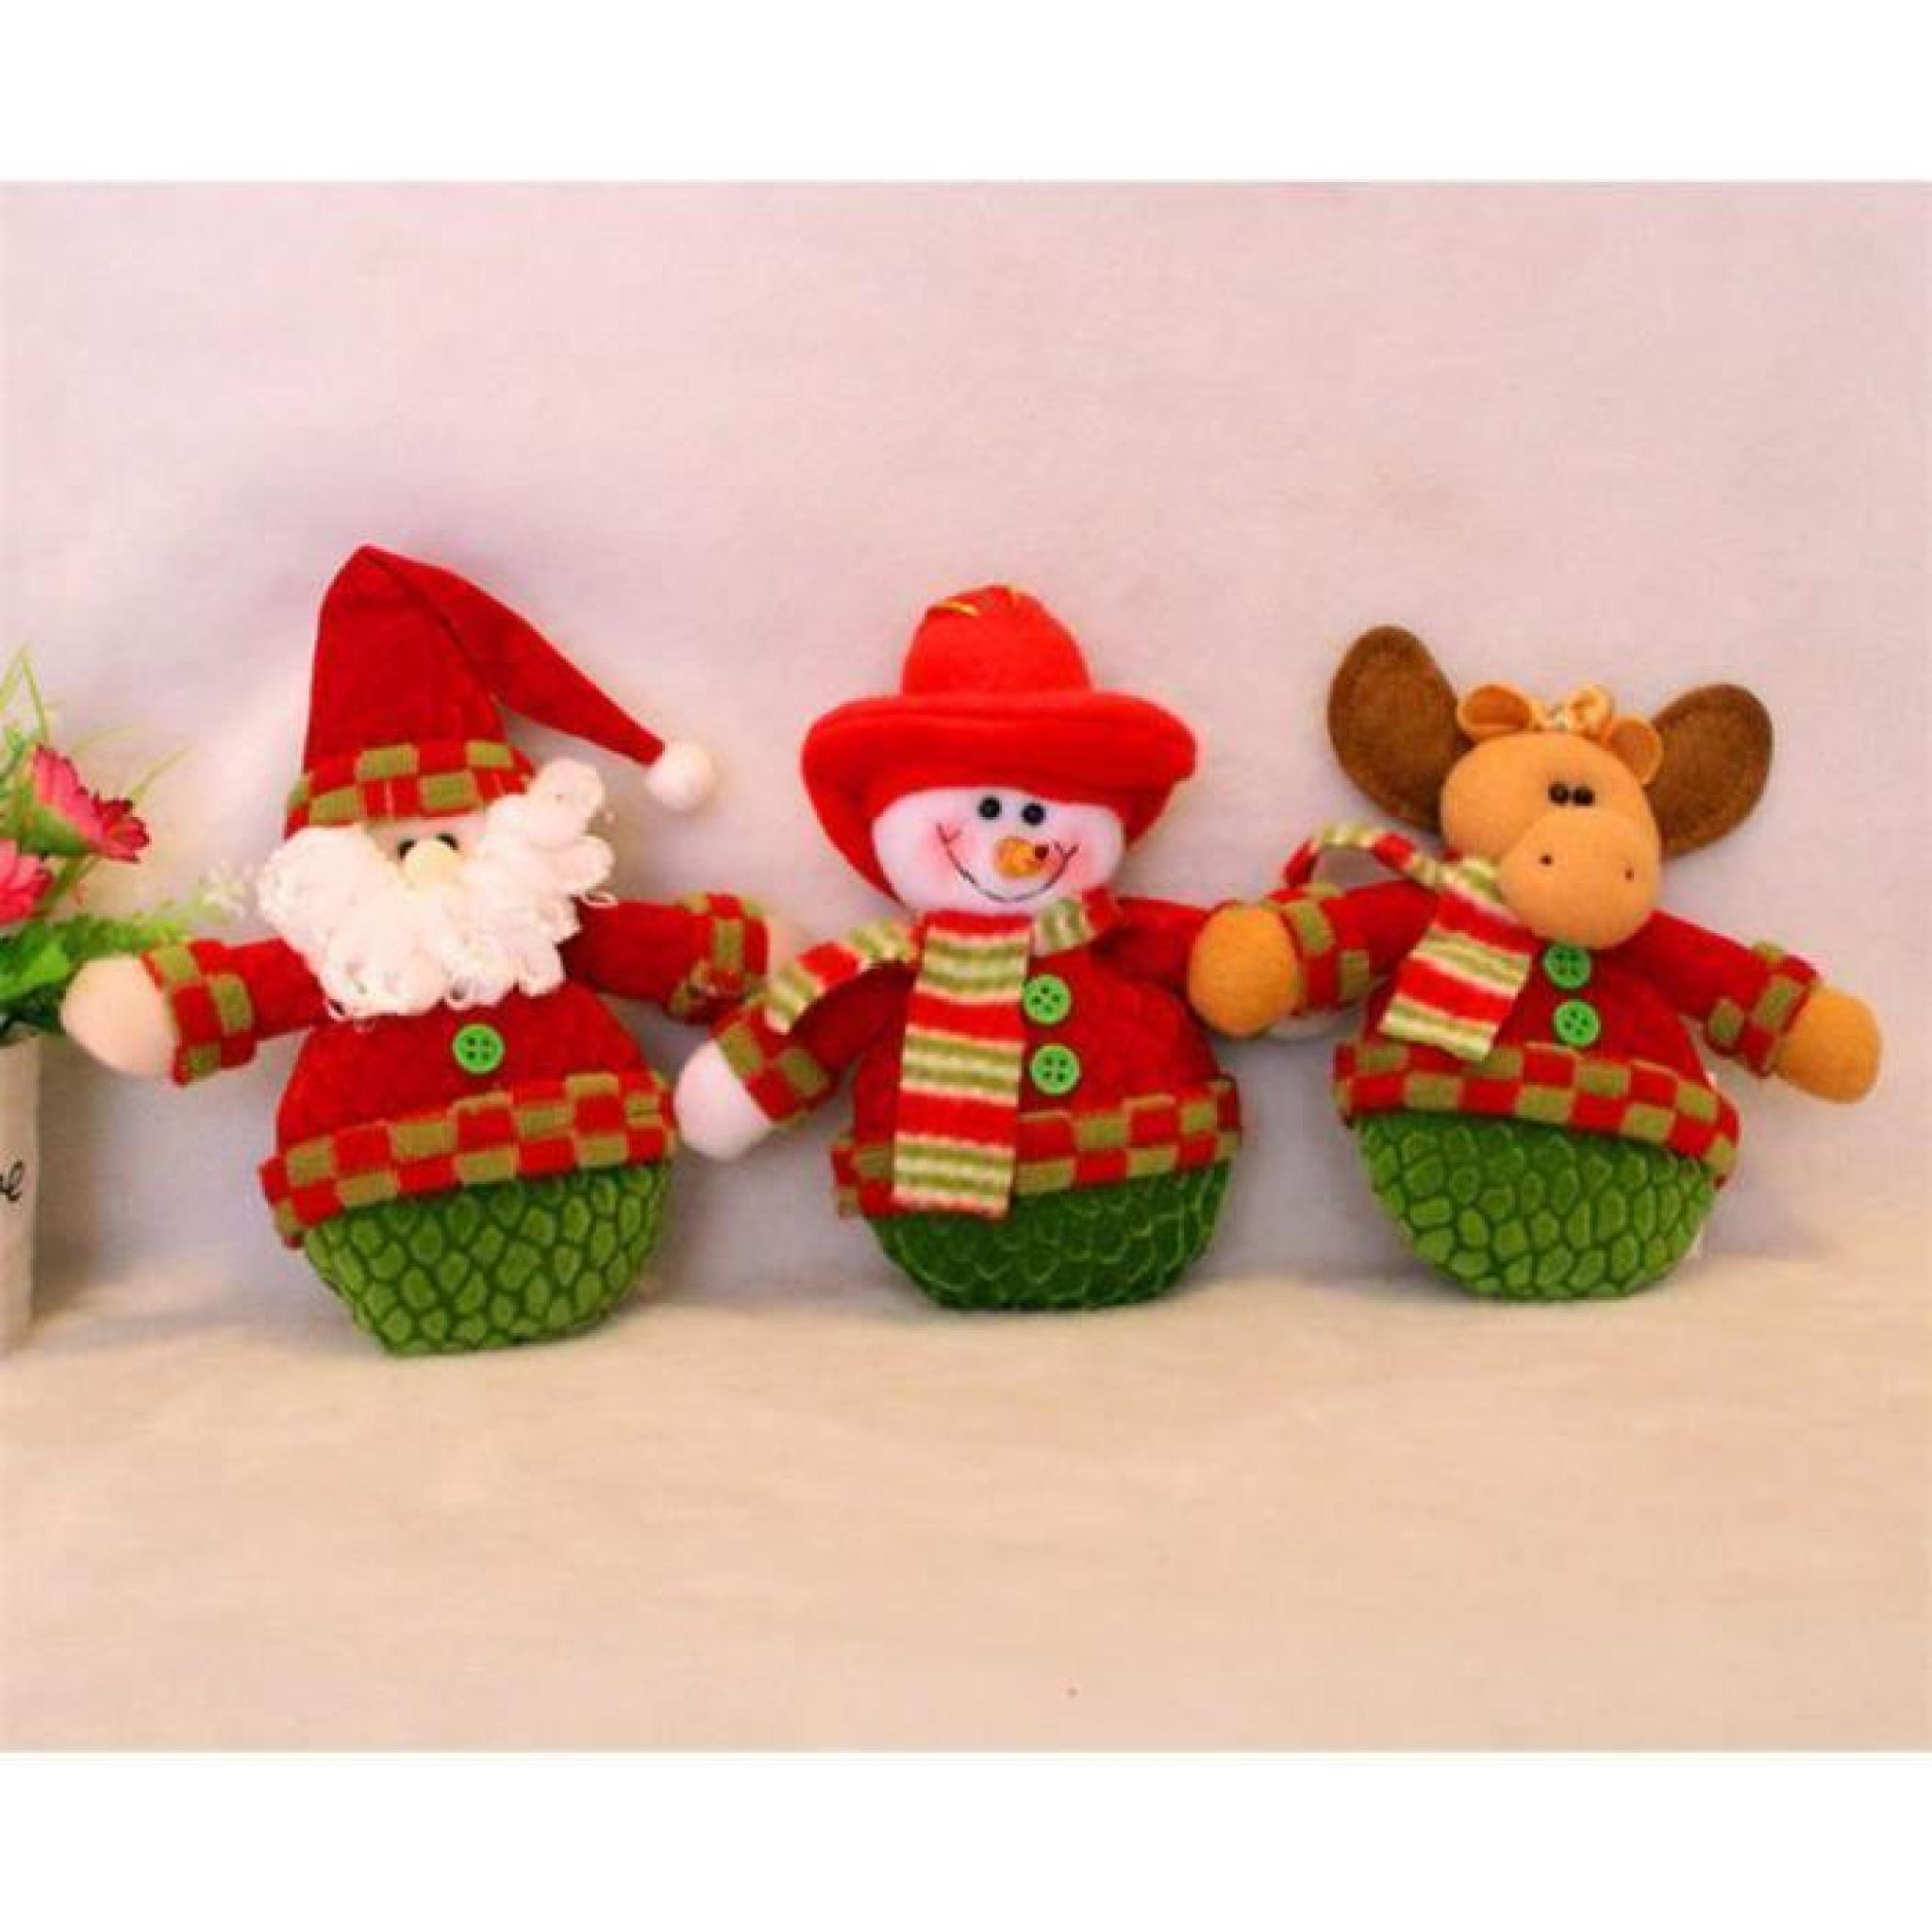 Lily royals®  3pcs Santa Claus Bonhomme de neige Santa Elf Porte de Noël Hanging arbre de Noël Hanging ornement Décoration de Noël